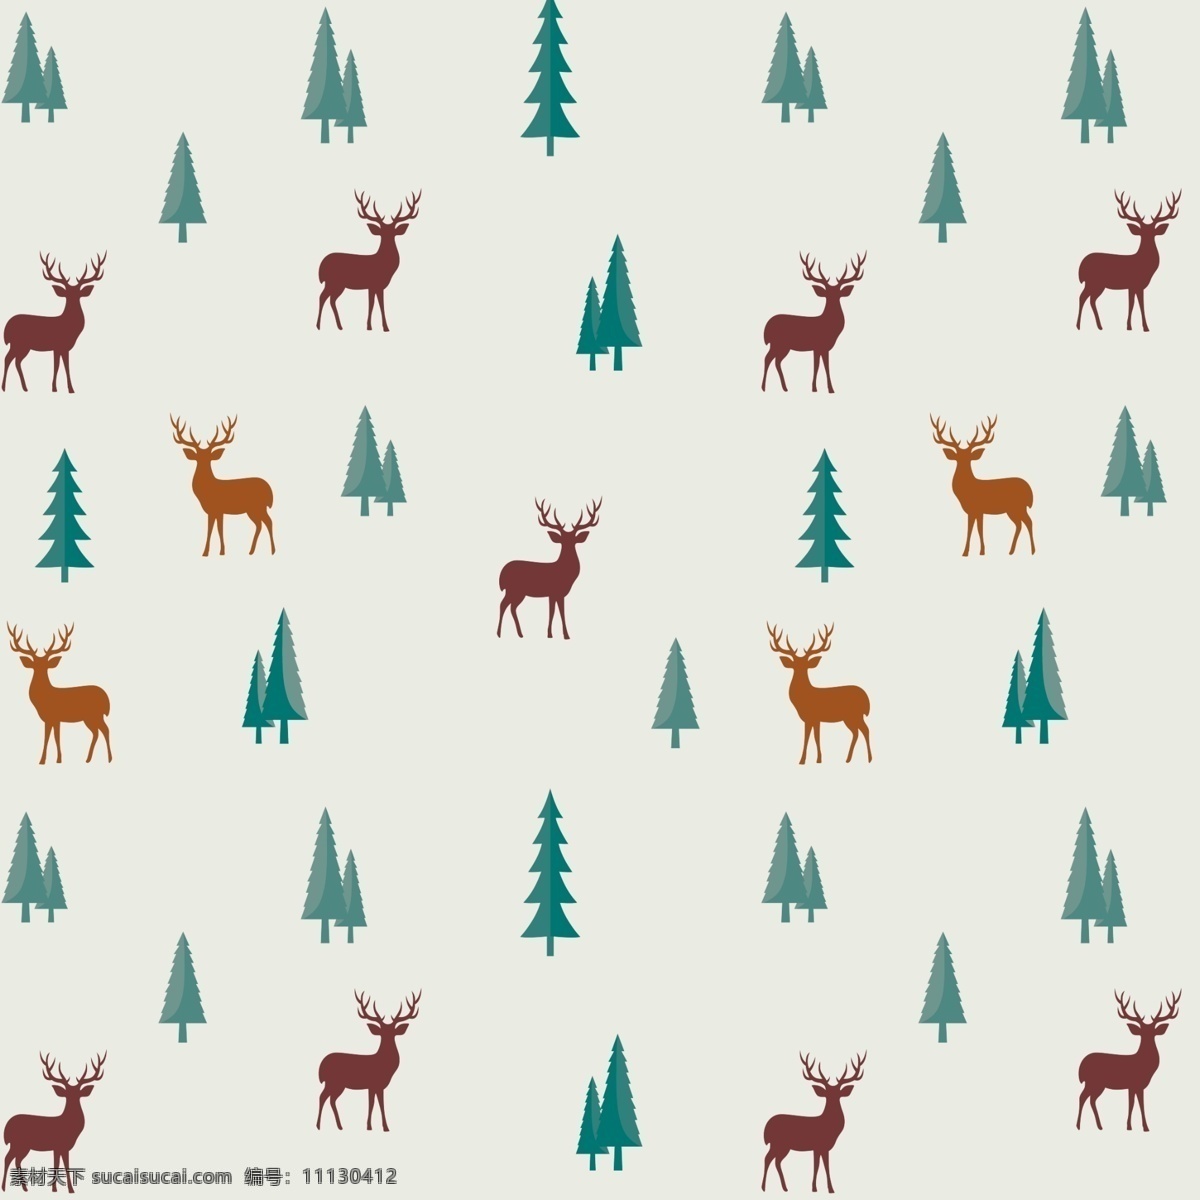 小鹿图片 麋鹿 小鹿 树木 动物 森林动物 卡通 卡通鹿 花布桌布 底纹边框 花边花纹